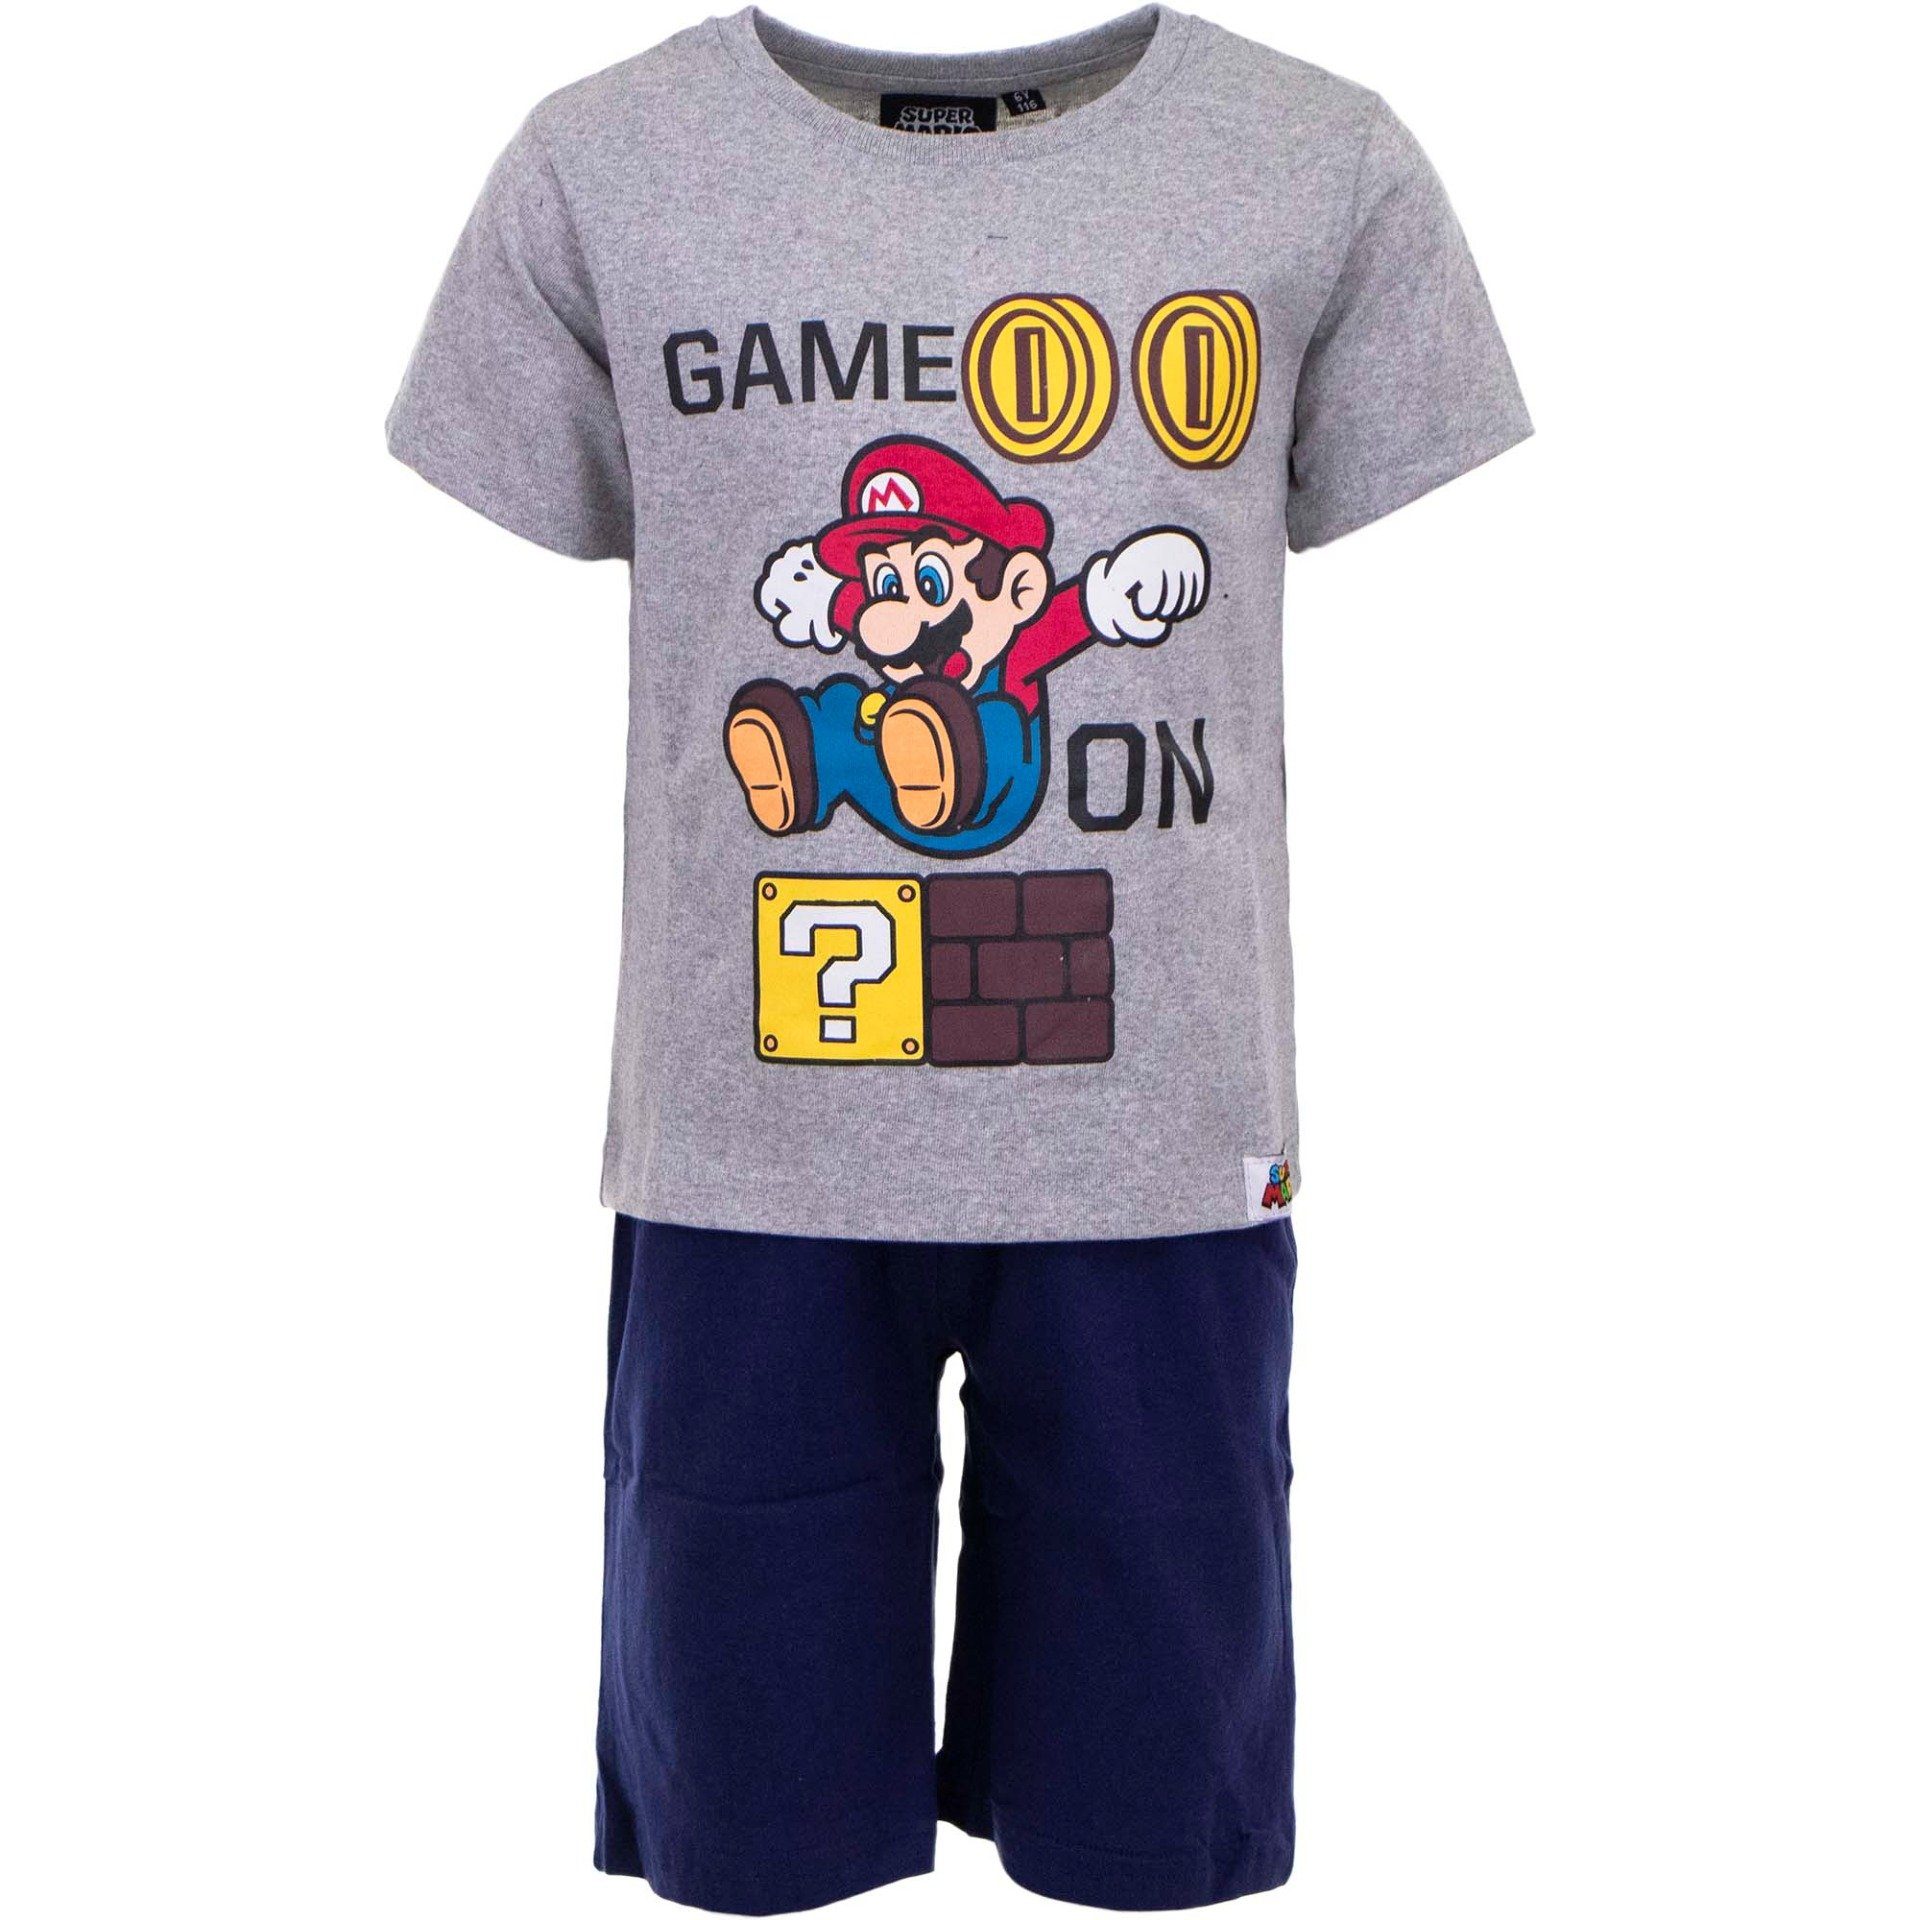 bis Pyjama Jungen Super On 98 Mario Gr. 128, Baumwolle Game Pyjama